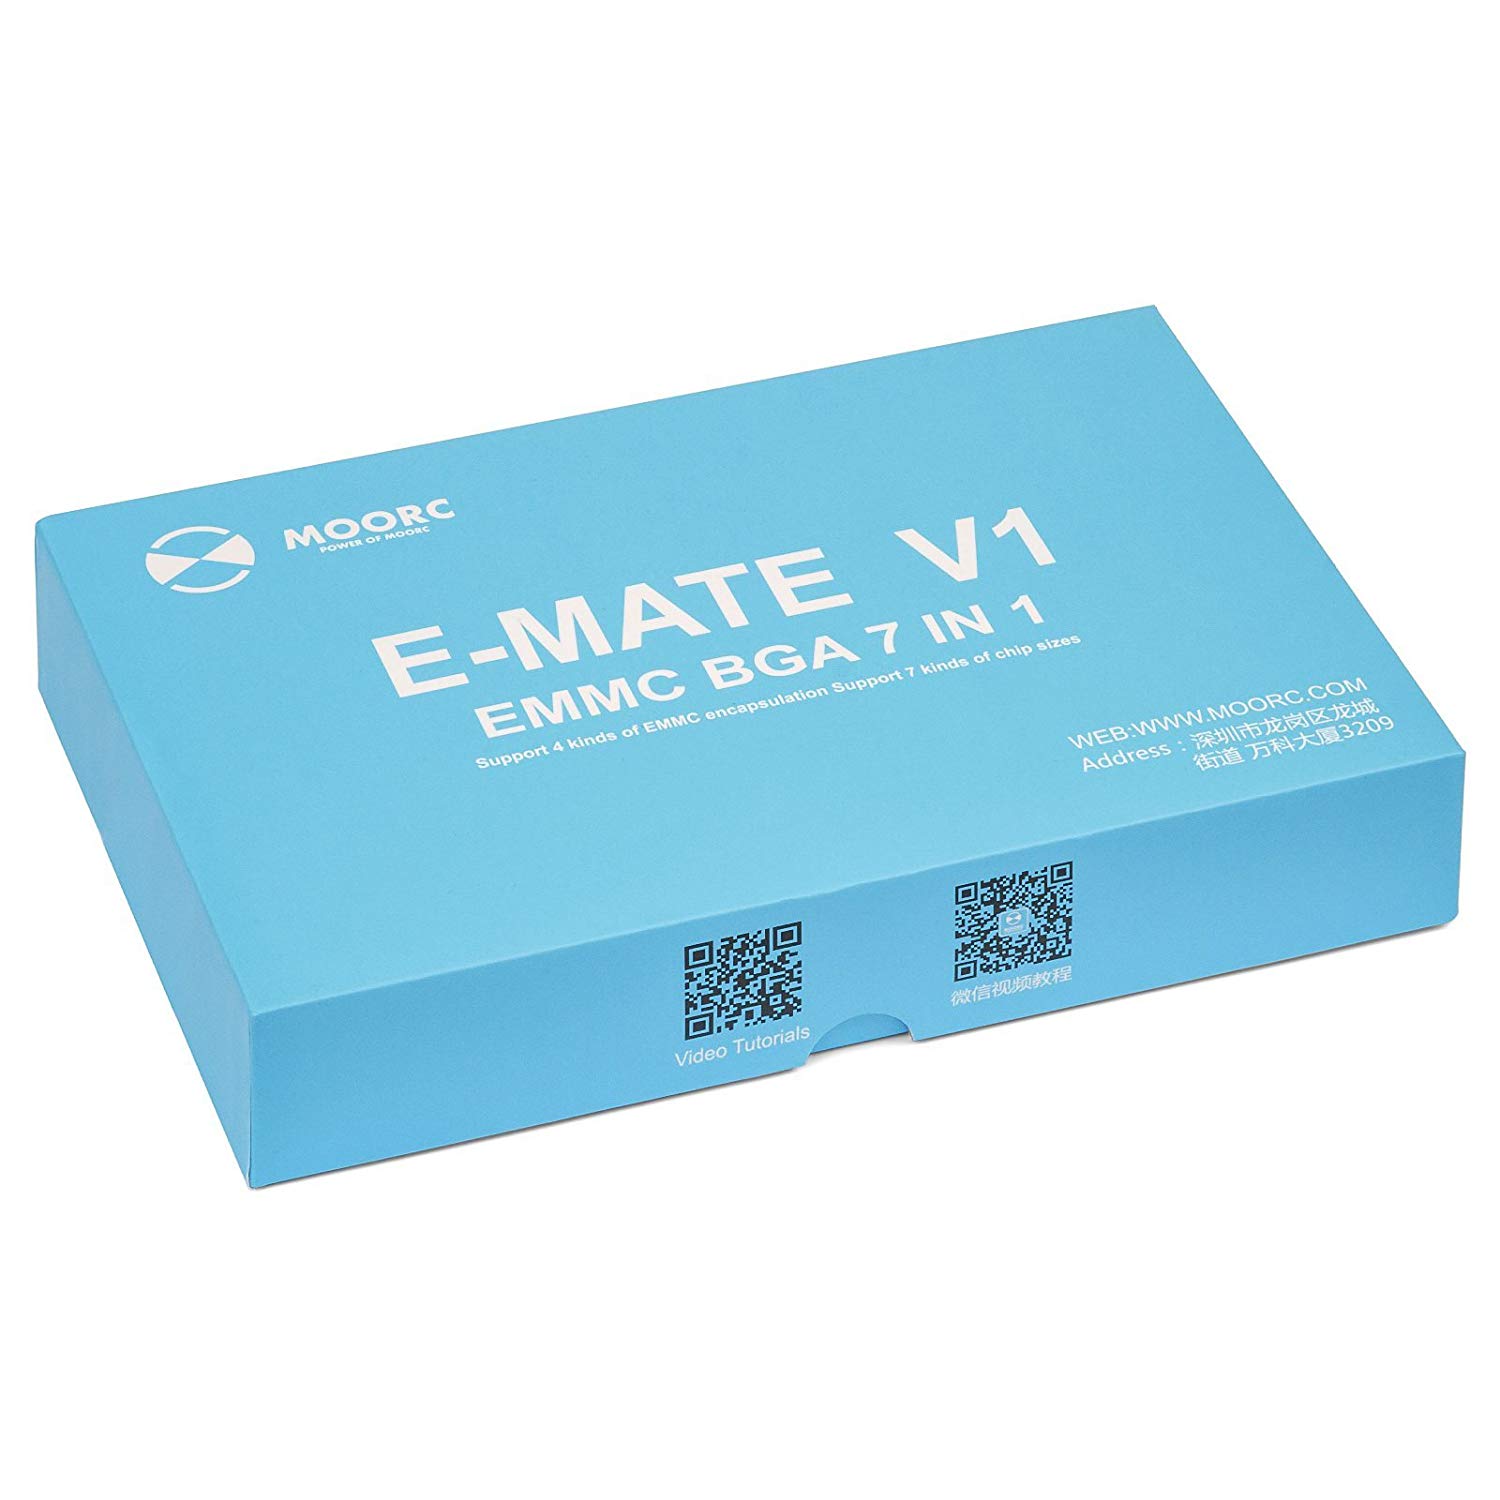 E-Mate Pro eMMC Tool v1